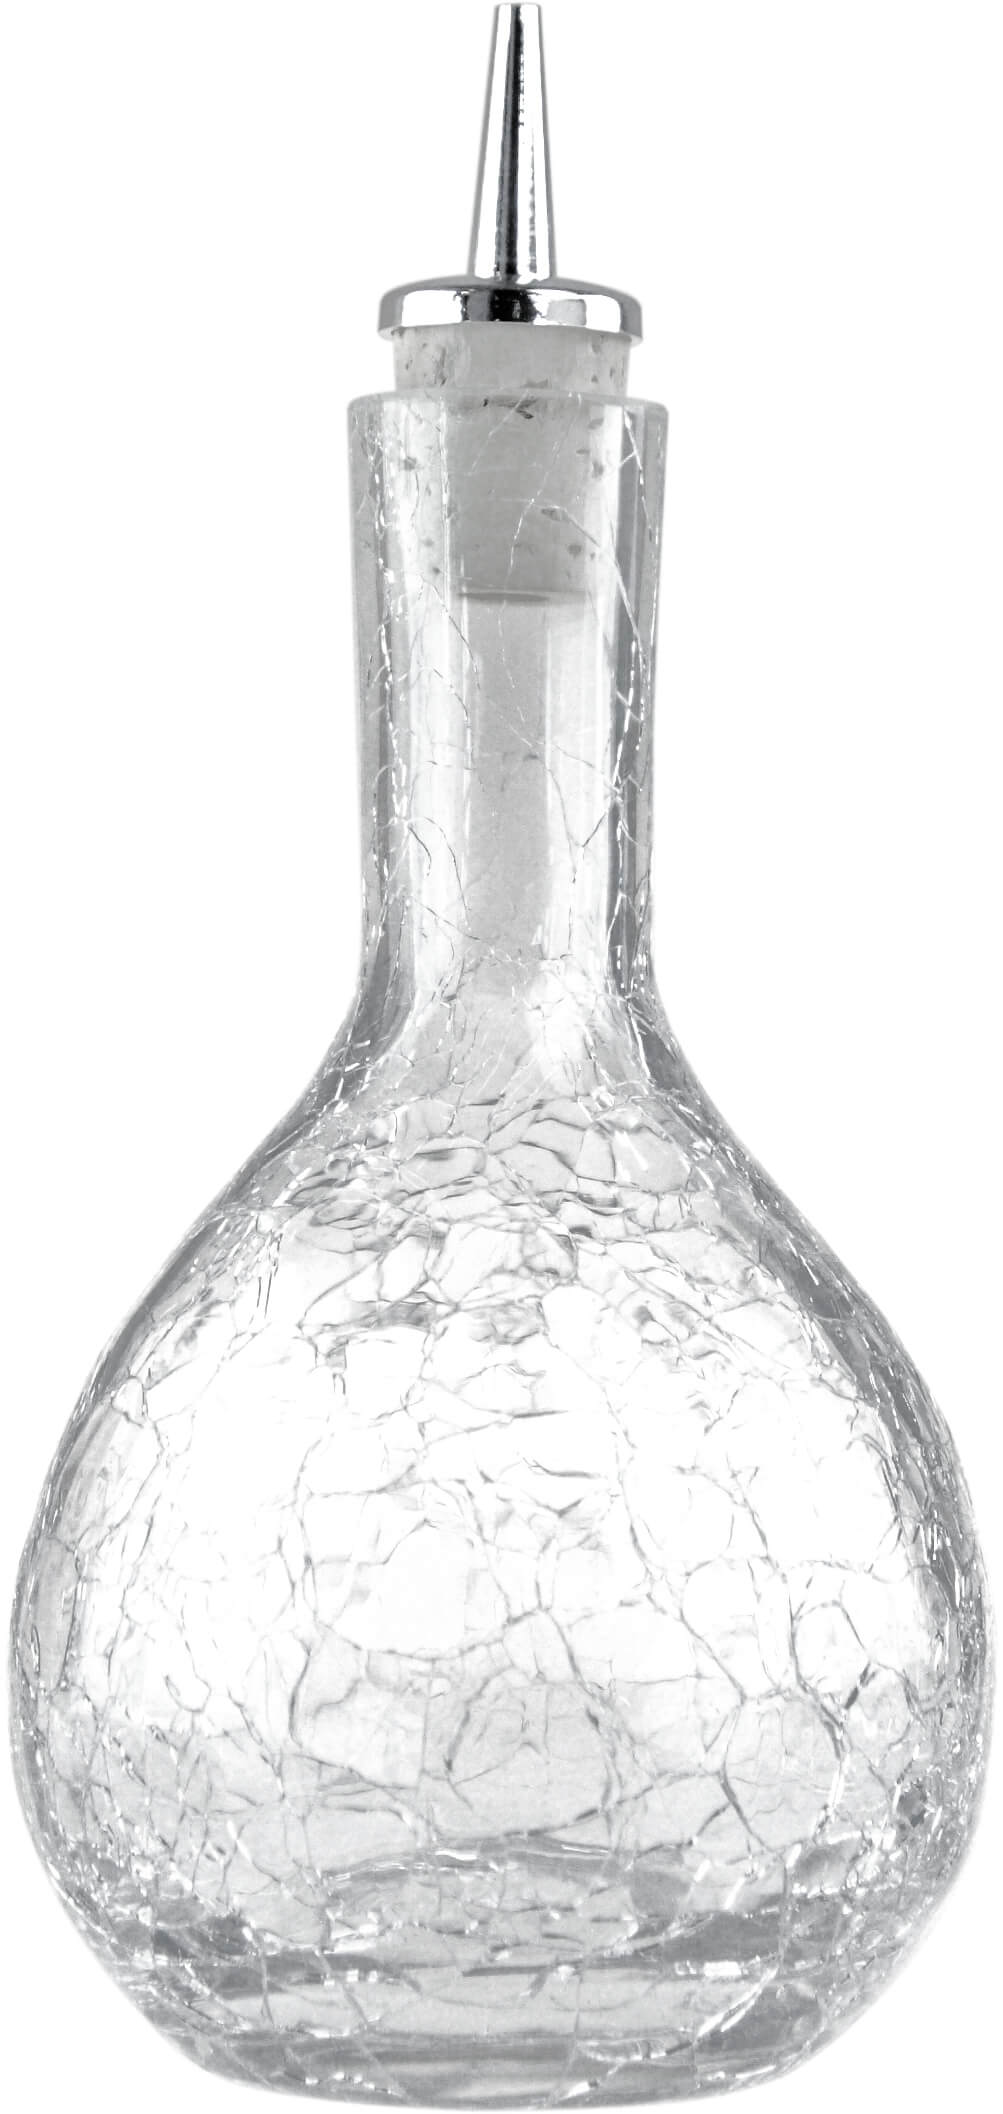 Bitterflasche, Krakelee - 330ml